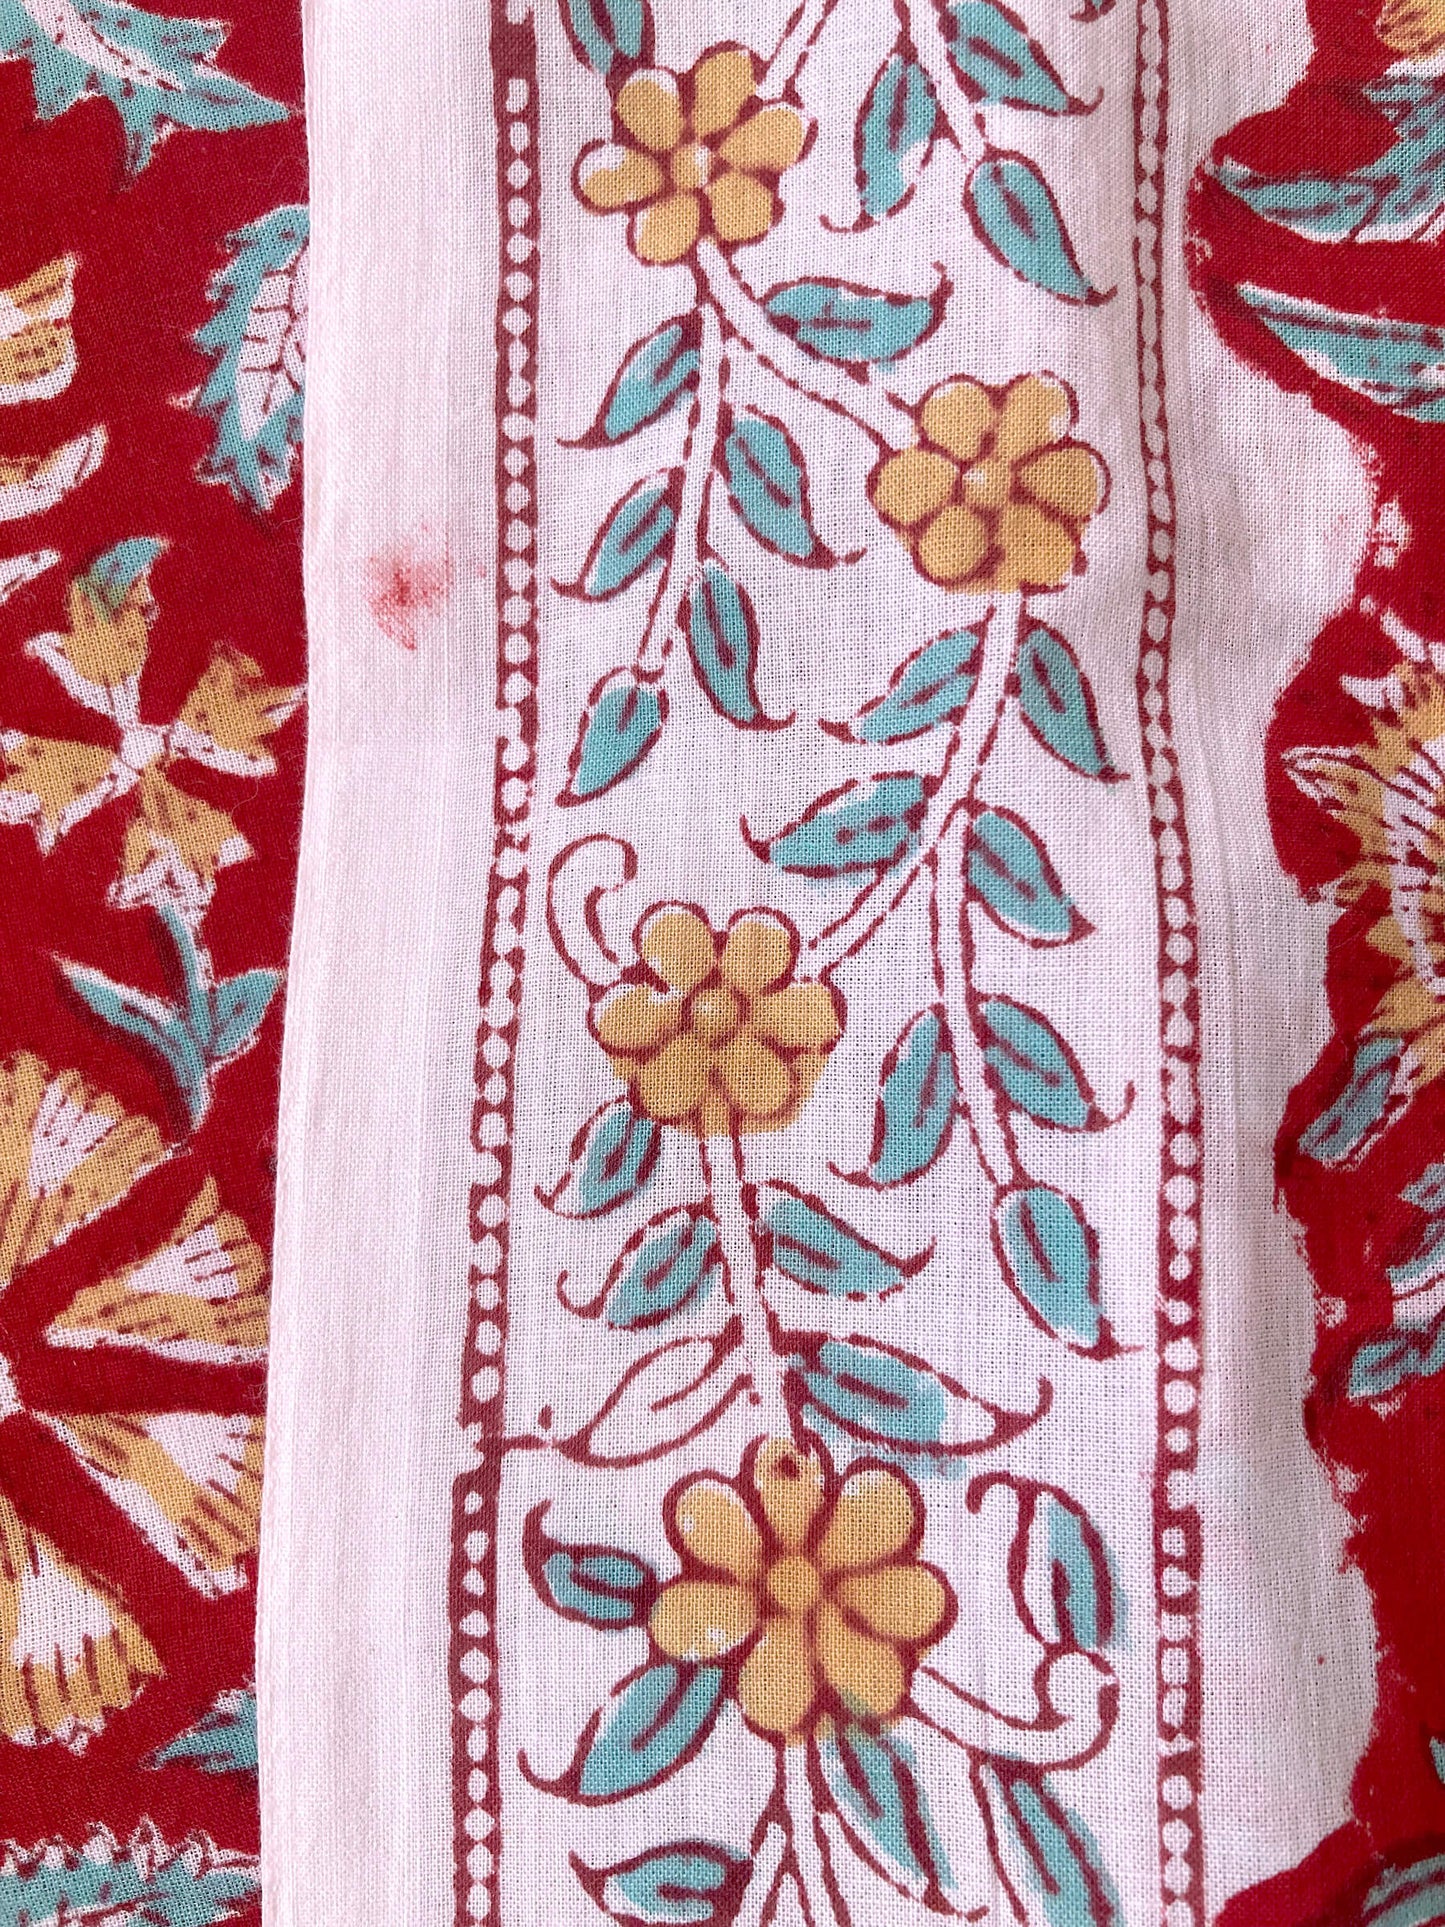 インド ハンドブロックプリント レッド装飾耳あり 花柄 コットン生地  #166-12